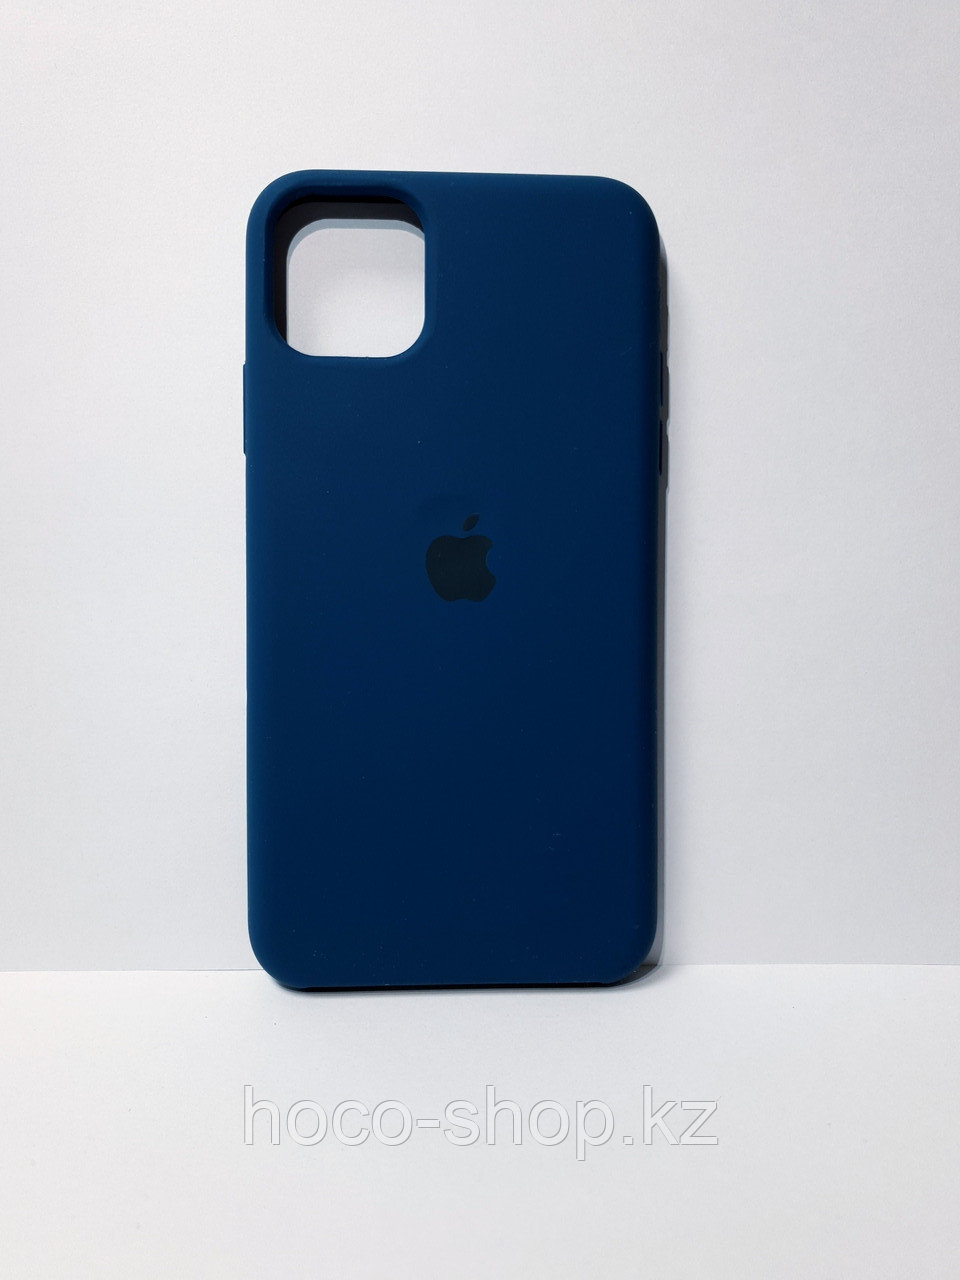 Защитный чехол для iPhone 11 Pro Max Soft Touch силиконовый, синий